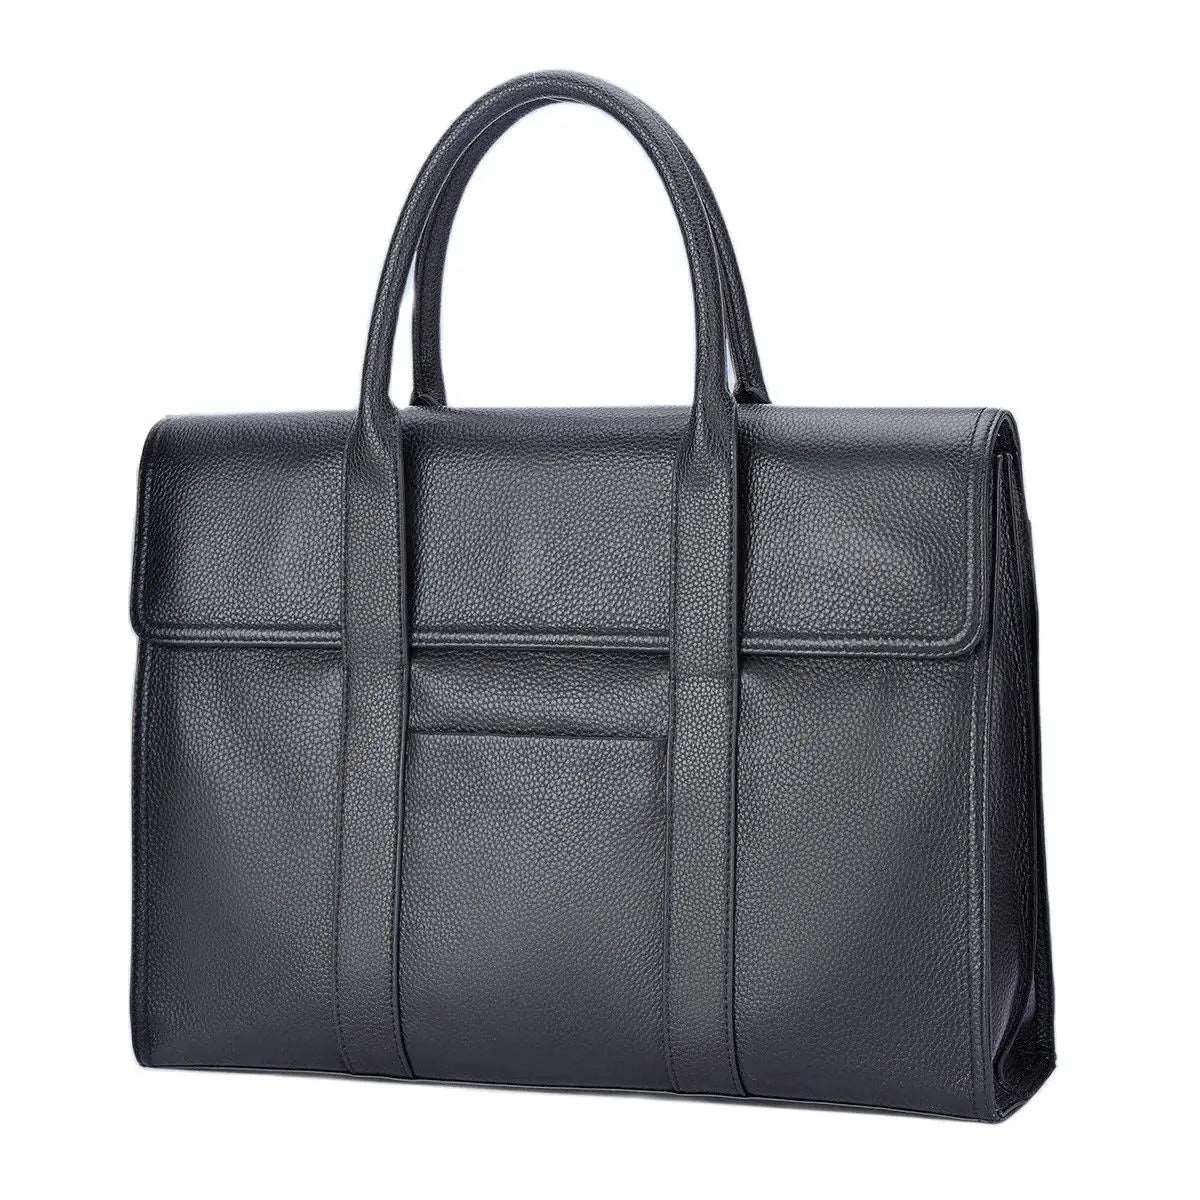 BISON DENIM Genuine Leather Business 14 inch Laptop Messenger Bag N20305-3B